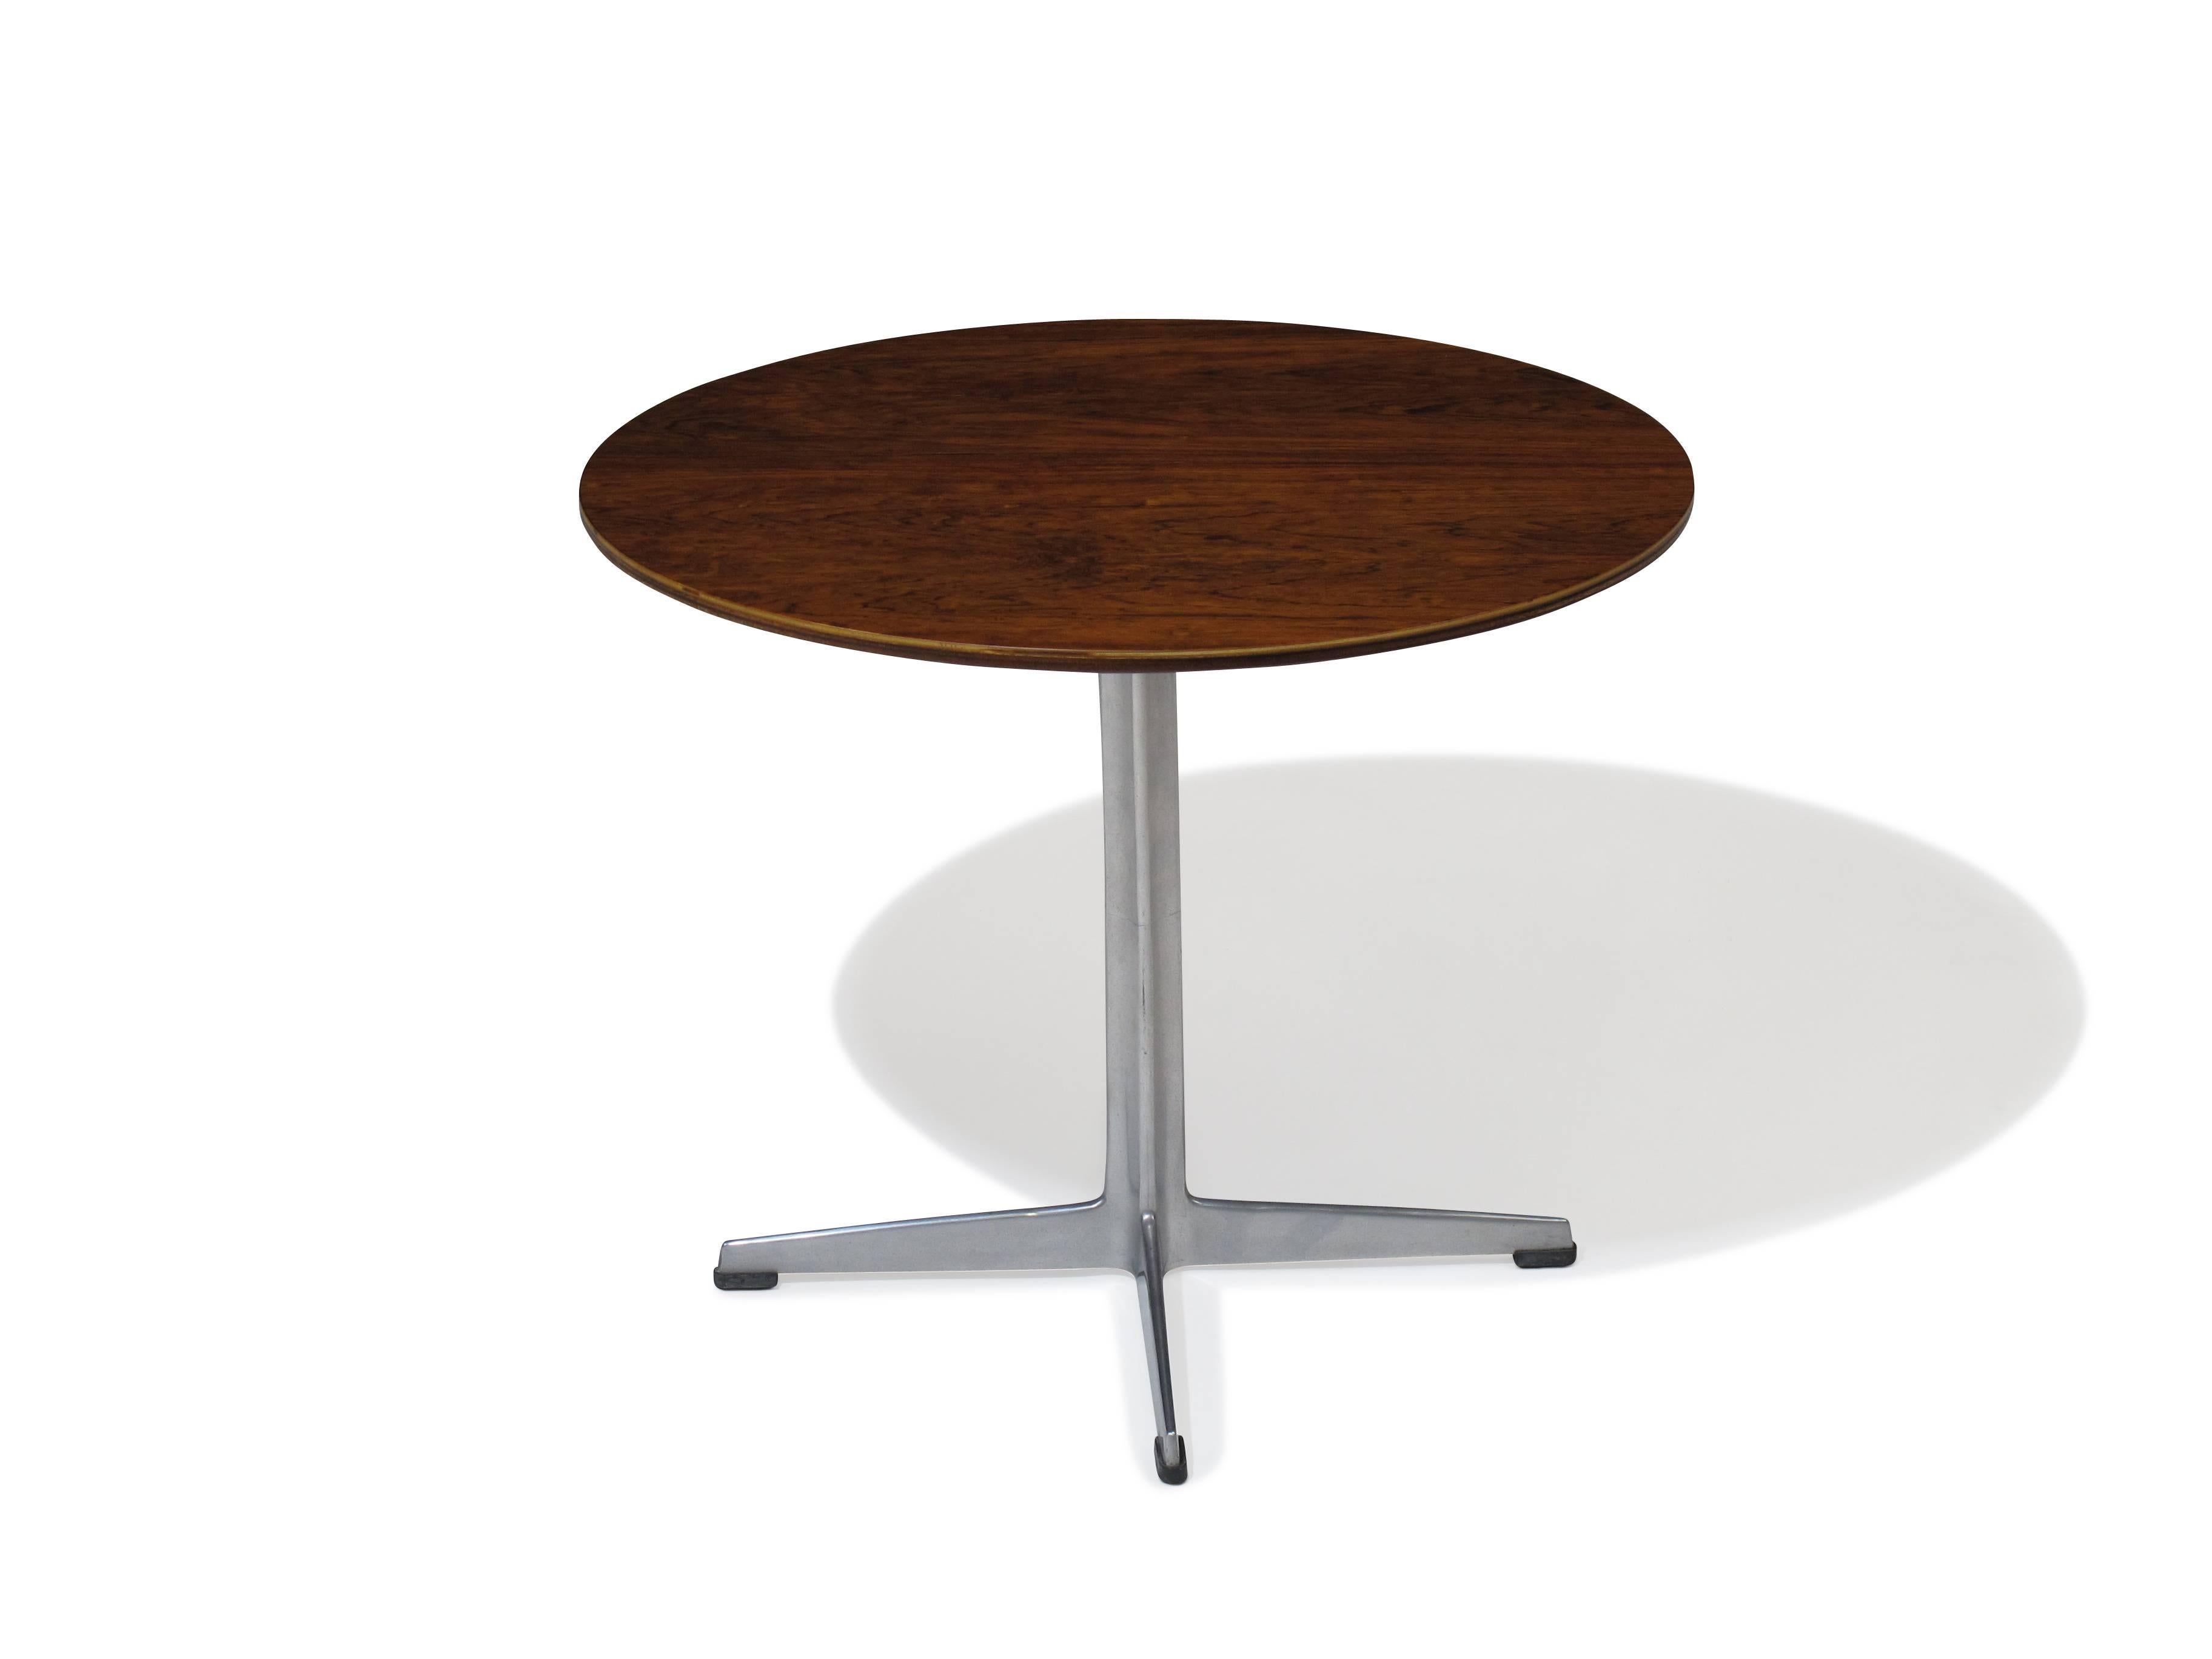 Rosewood table on aluminum base designed by Arne Jacobsen for Fritz Hansen, Denmark.